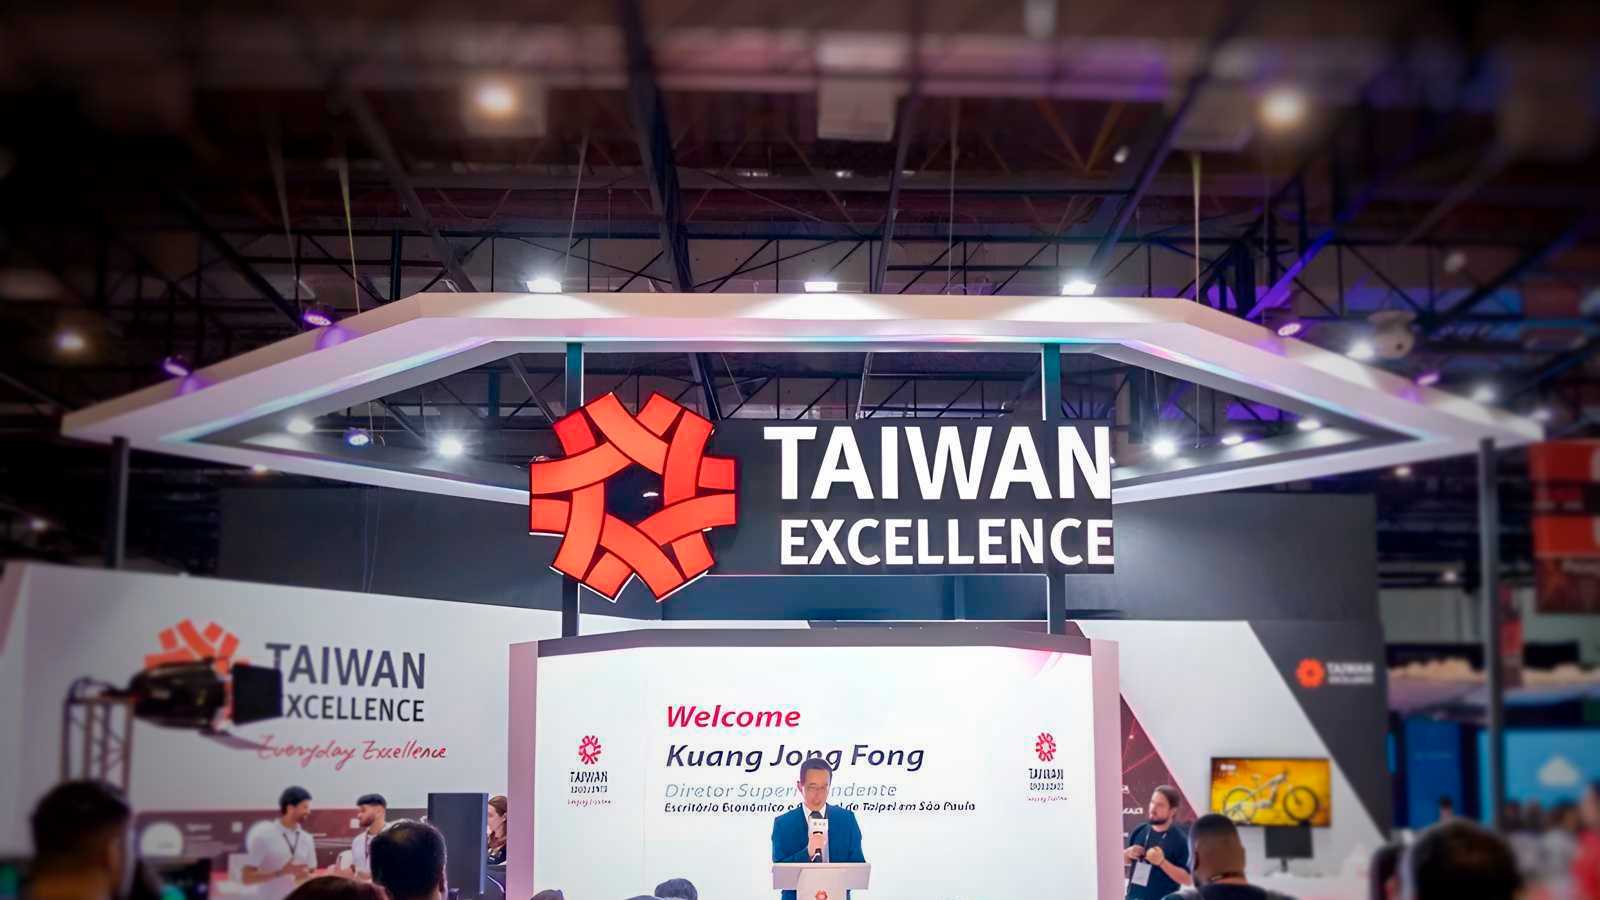 Taiwan excellence apresenta novidades de tecnologia na bgs 2023. Taiwan excellence estará presenta na bgs 2023 apresentando tudo que o mercado tecnológico de taiwan pode oferecer. Confira as novidades!